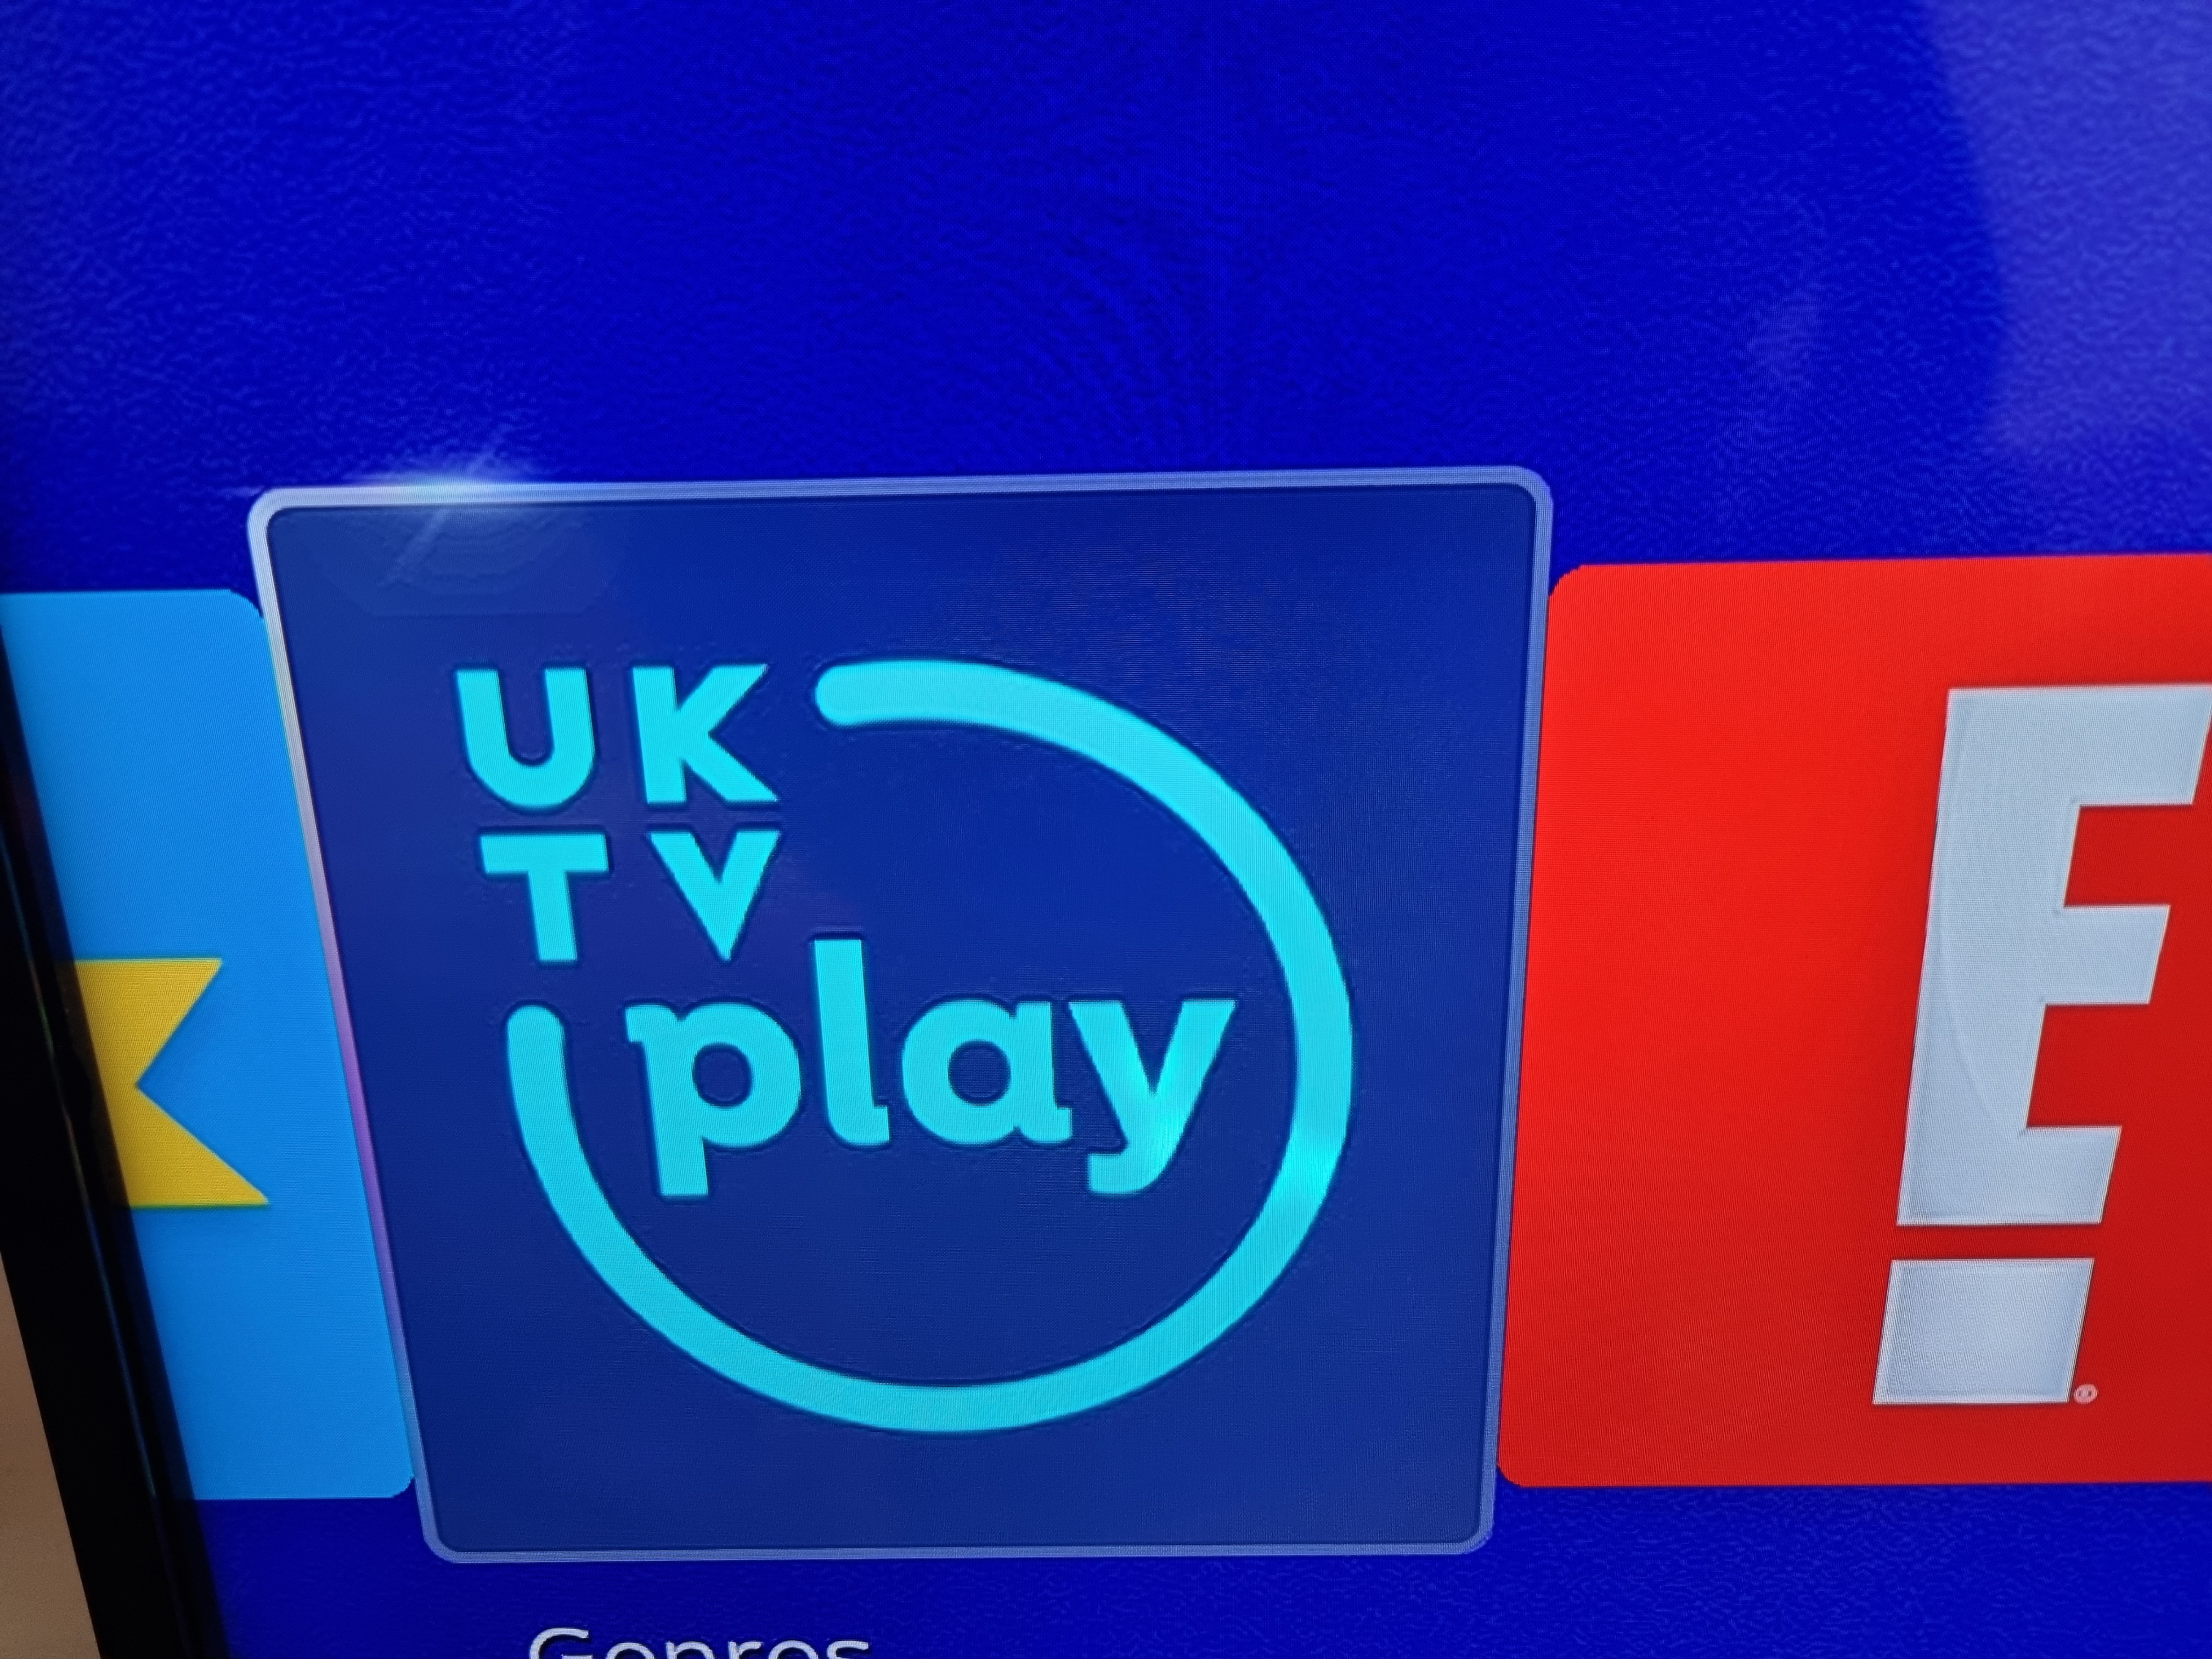 UKTV Play Sky Community